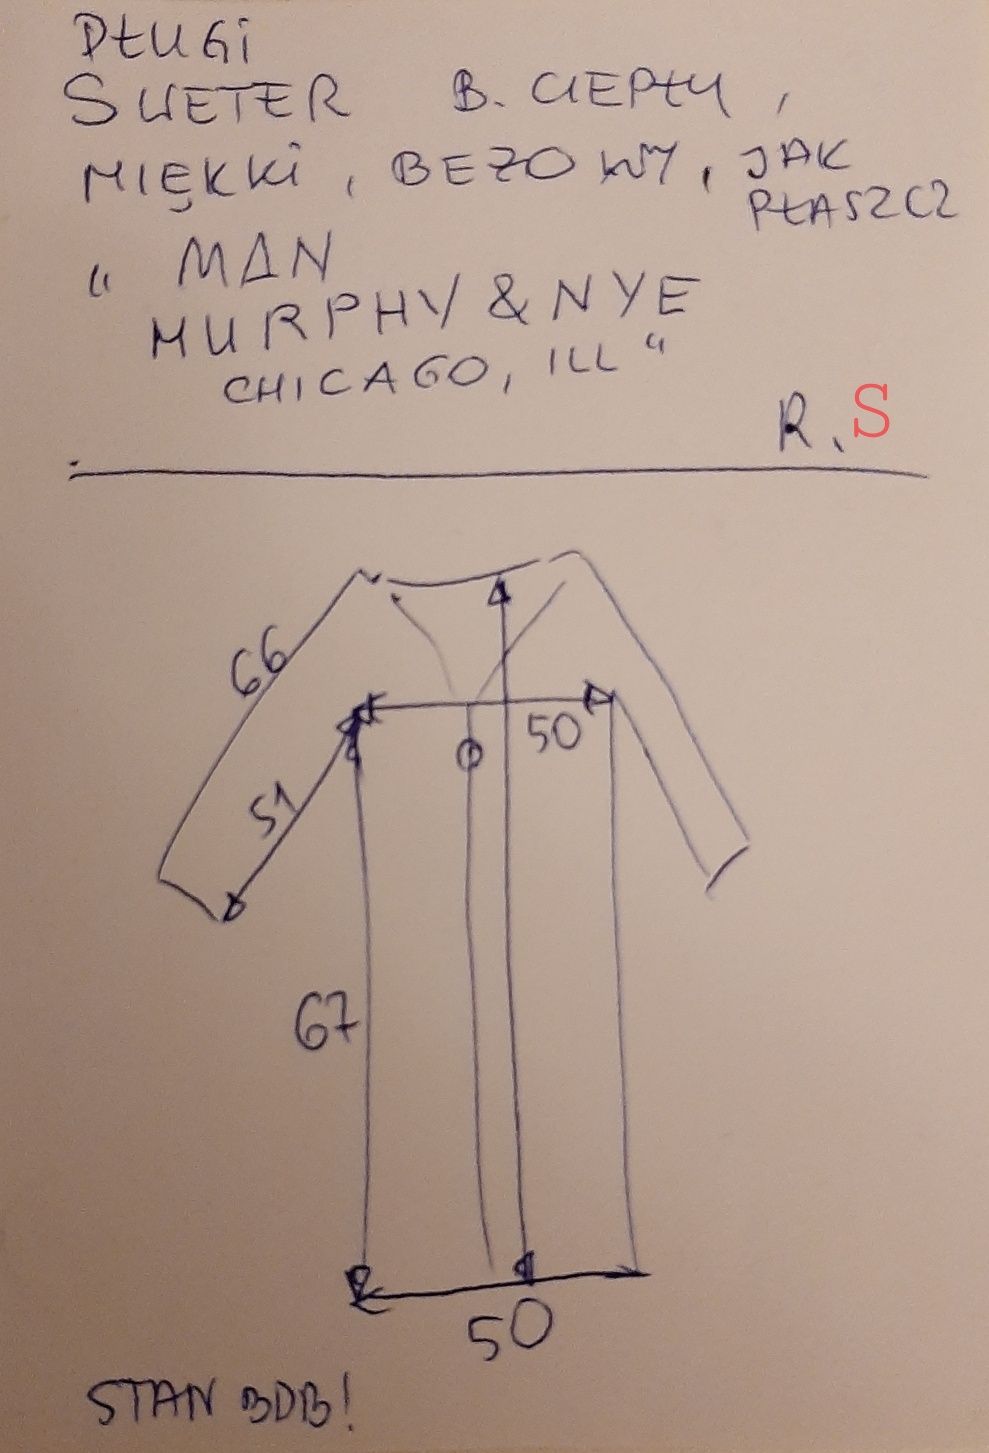 Sweter damski, długi jak płaszcz firmy ,,MAN MURPHY&NYE Chicago, ILL"i